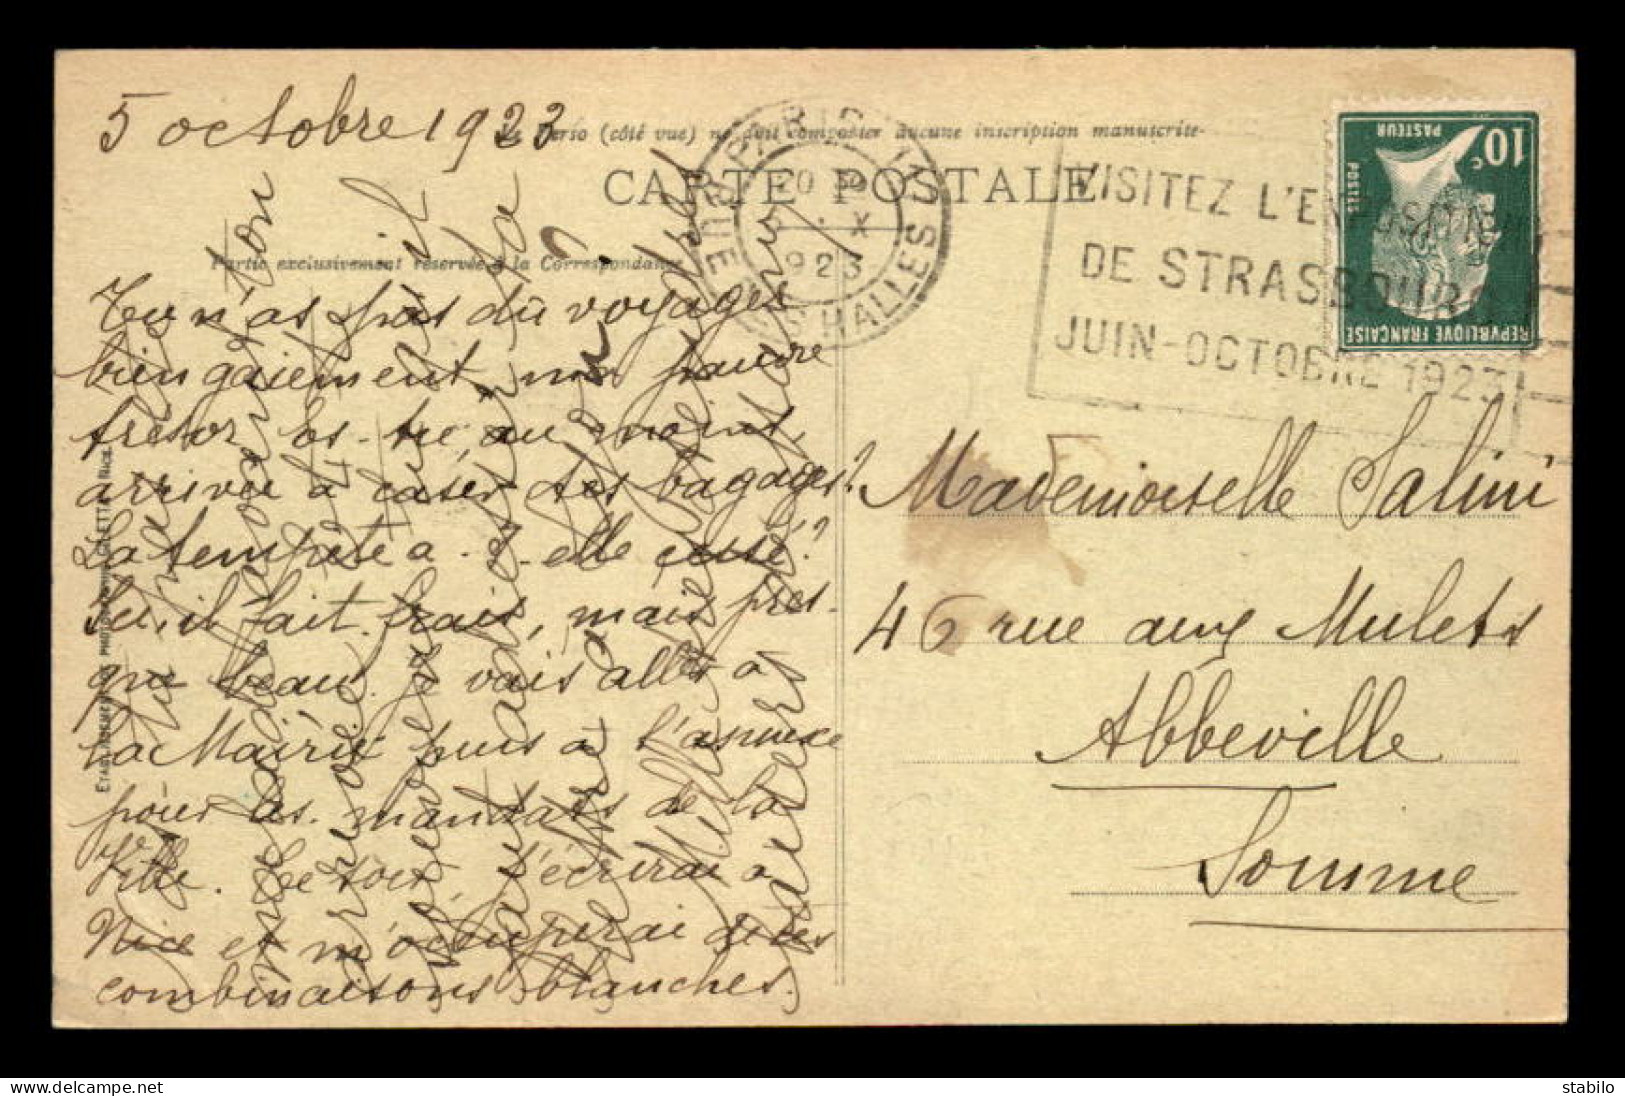 OBLITERATION MECANIQUE - PARIS - VISITEZ L'EXPOSITION DE STRASBOURG JUIN-OCTOBRE 1923 - Mechanical Postmarks (Other)